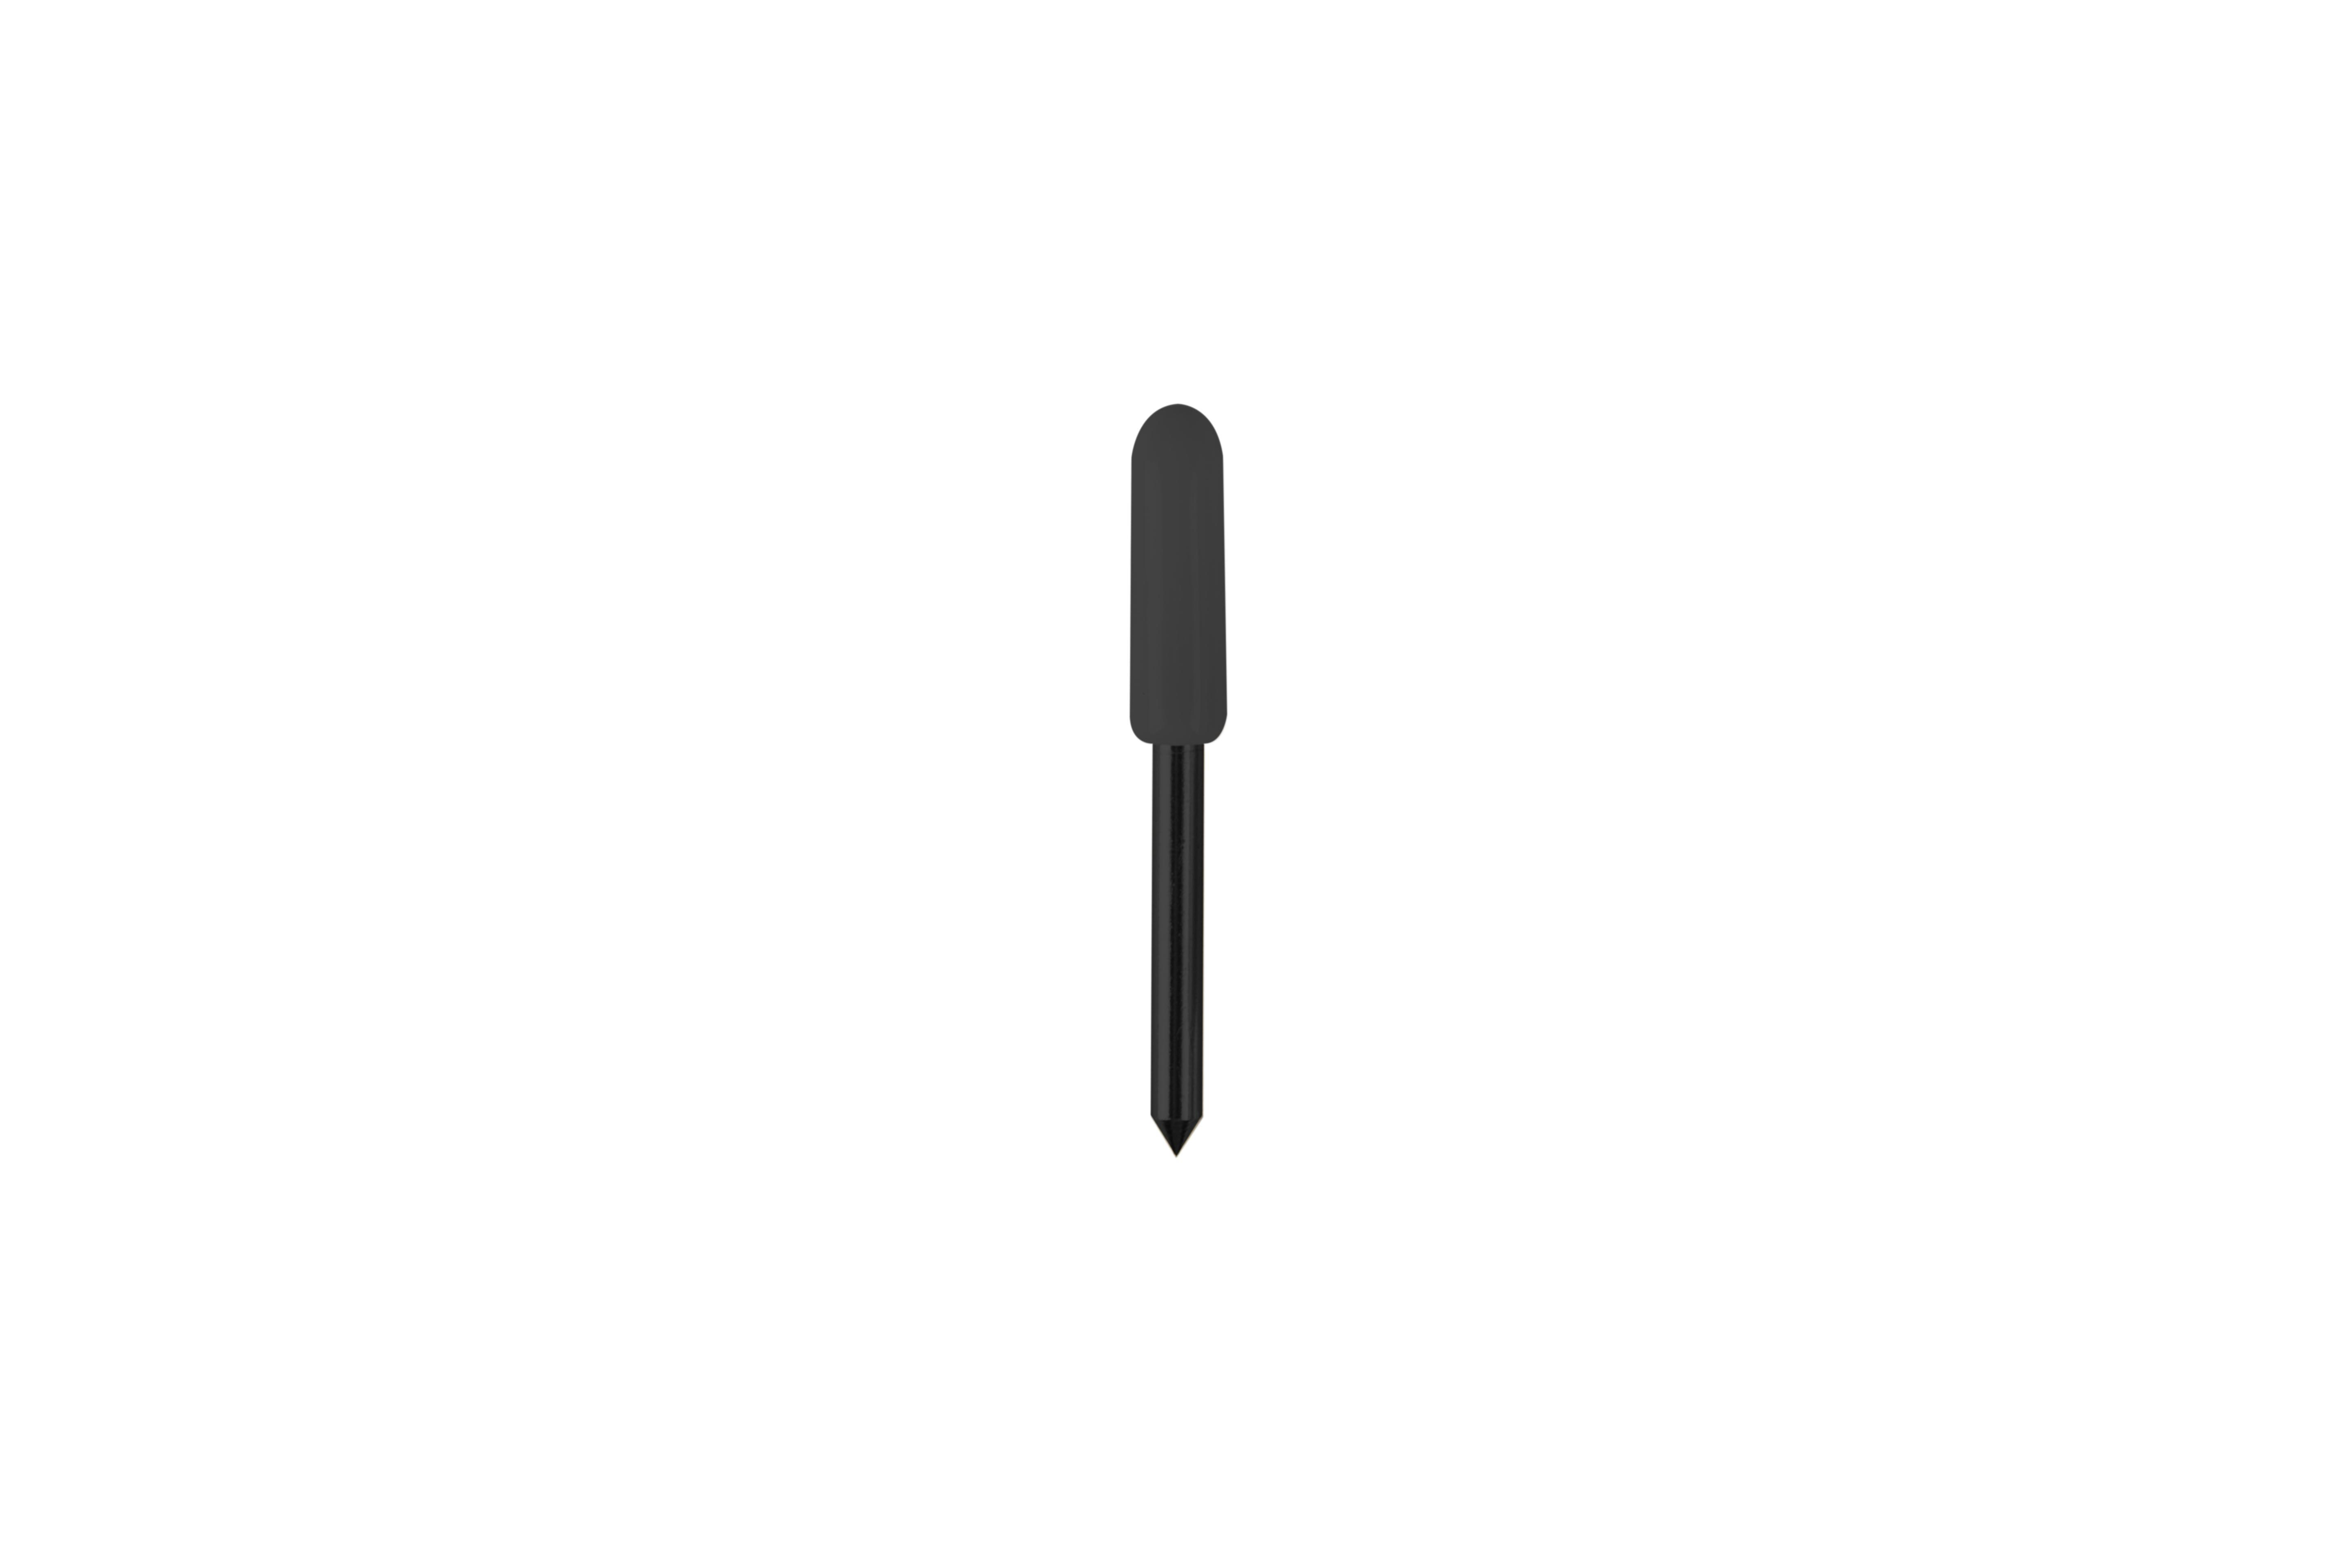 Blade Schwarz Gehäuse Deep-Point CRICUT Schneidemesser inkl.